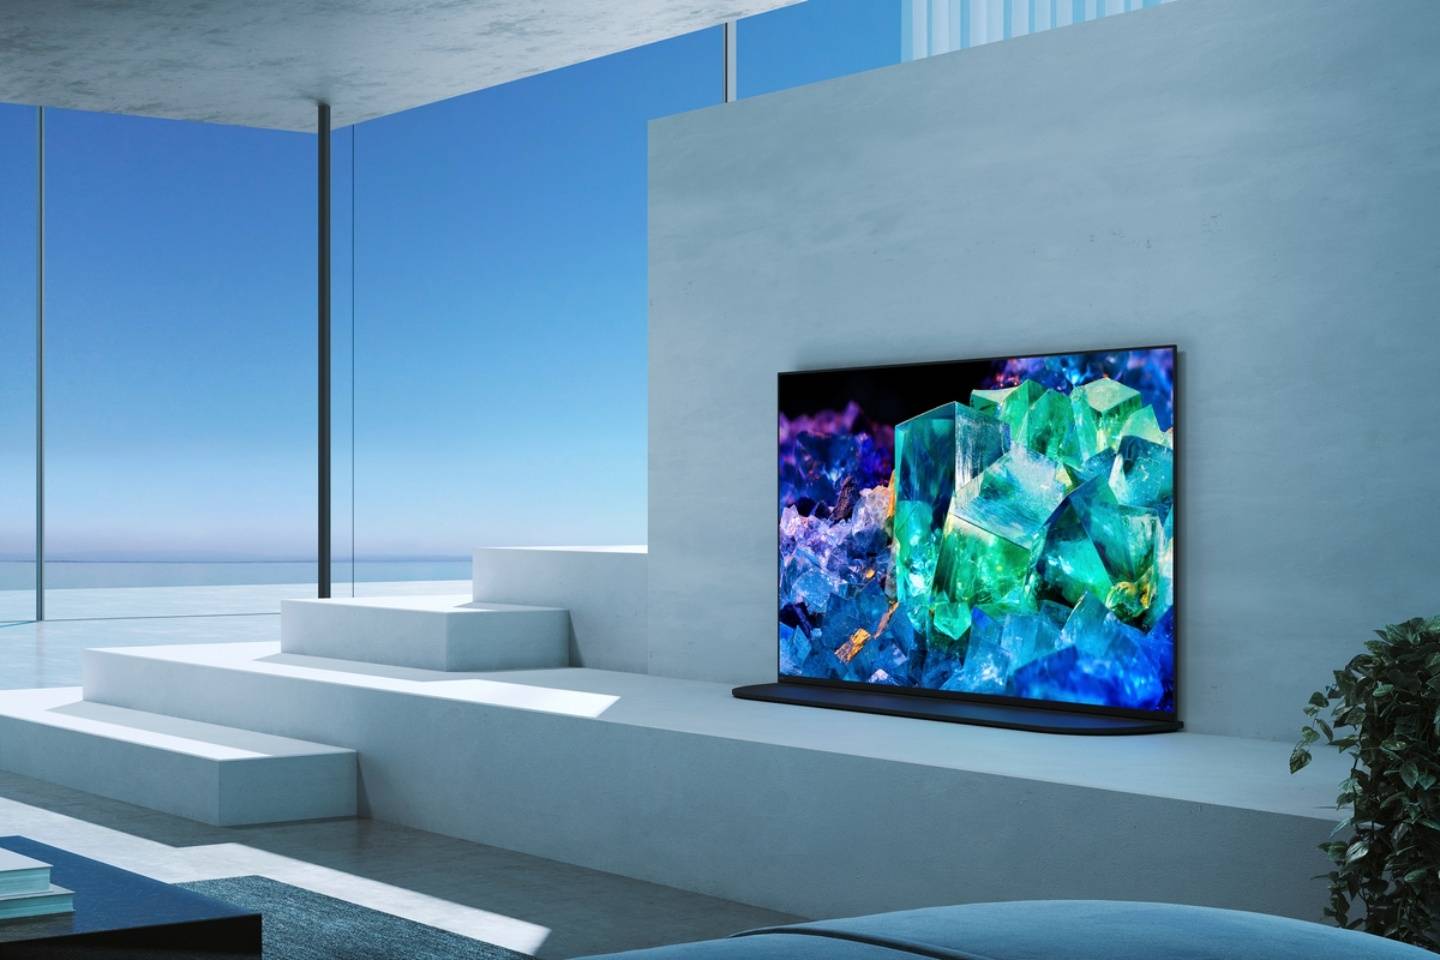 4837e542 1aa2 4358 9ffe d9f90e900de8 - Esperienza del nuovo prodotto Sony TV 2022: il pannello TV QD-OLED è molto profumato e costoso